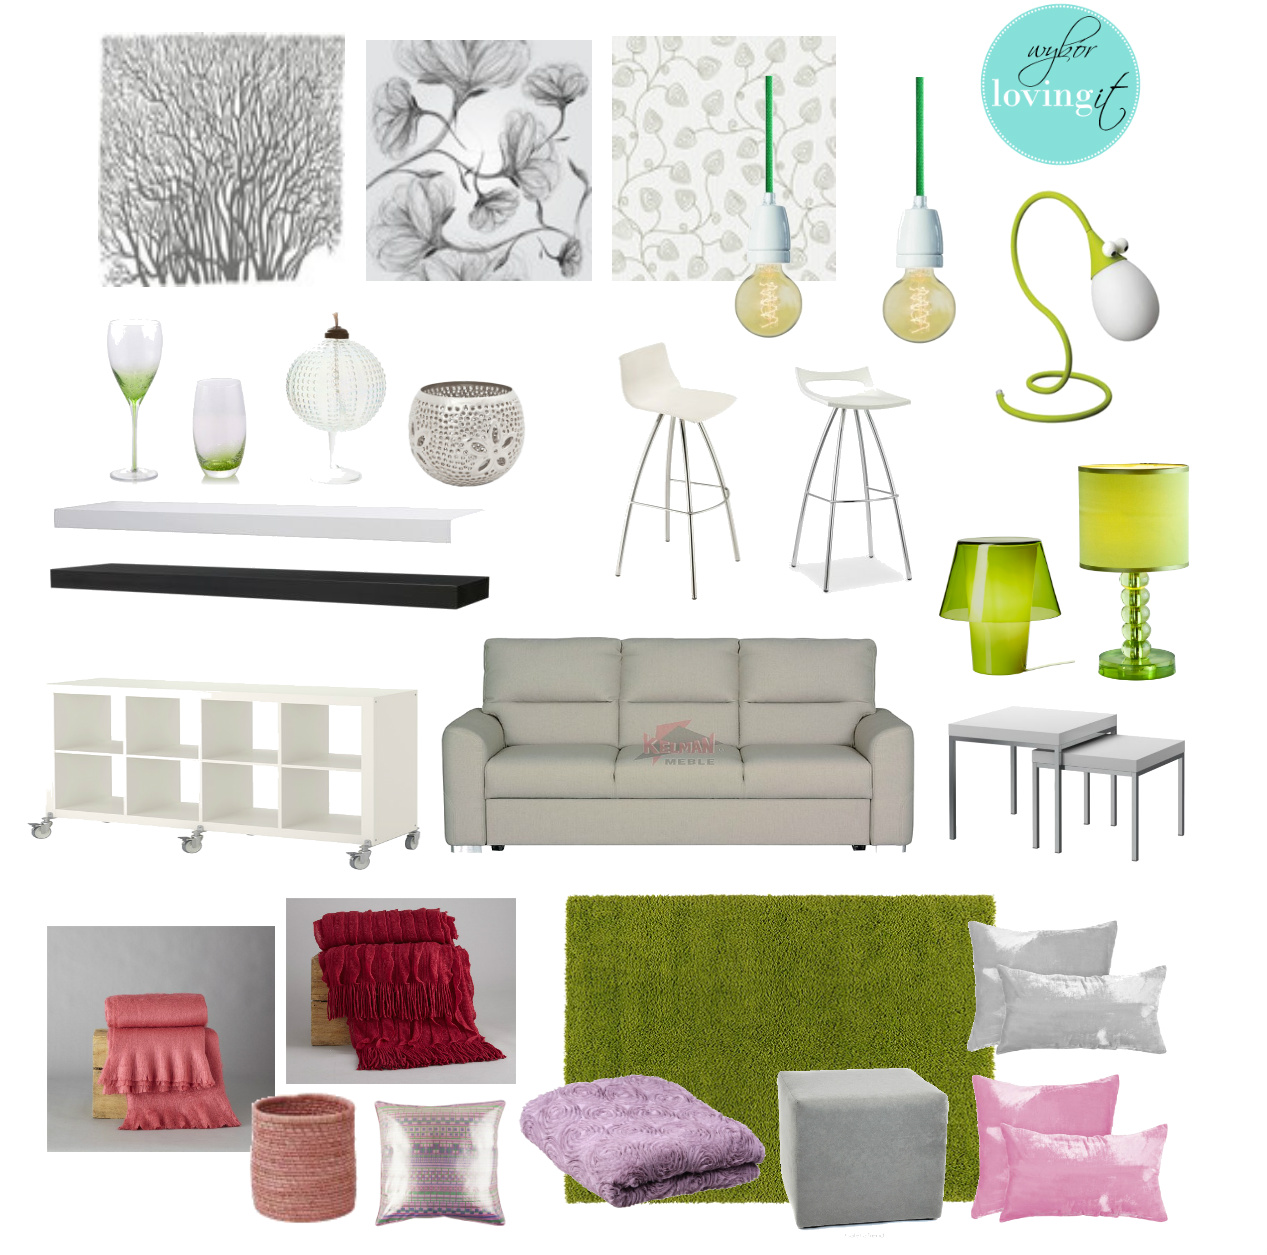 biało-różowo-szare wnętrze,nowoczesny styl małego mieszkania,szaro-białe fototapety,folie na szkło,żarówki na zielonym kablu,zielone lampy,szara sofa,białe półki,czarna półka,fioletowe poduszki,rózowe detale,limonkowe kolory we wnetrzach,bordowy pled,metalowe stoliki,kwadratowe stoliki kawowe,stolik biały na metalowych nóżkach,różowe dekoracje,zielone dekoracje,regał na kółkach,meble na kółkach,jak tanio urządzić mieszkanie,hokery,biało-zielone szkło,stołki barowe do kuchni